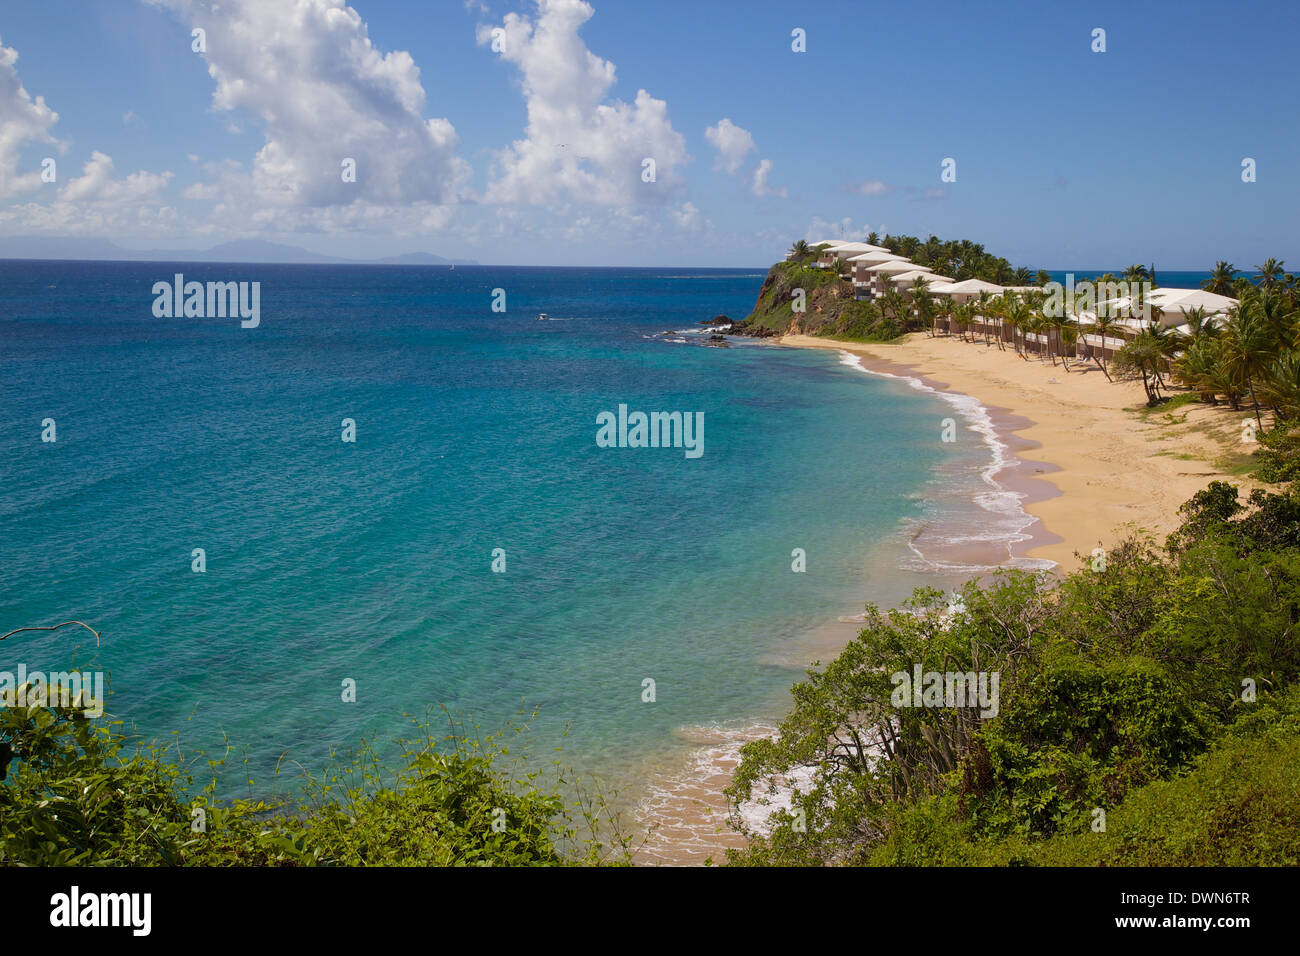 Grace Bay et de la plage, Sainte Marie, Antigua, Iles sous le vent, Antilles, Caraïbes, Amérique Centrale Banque D'Images